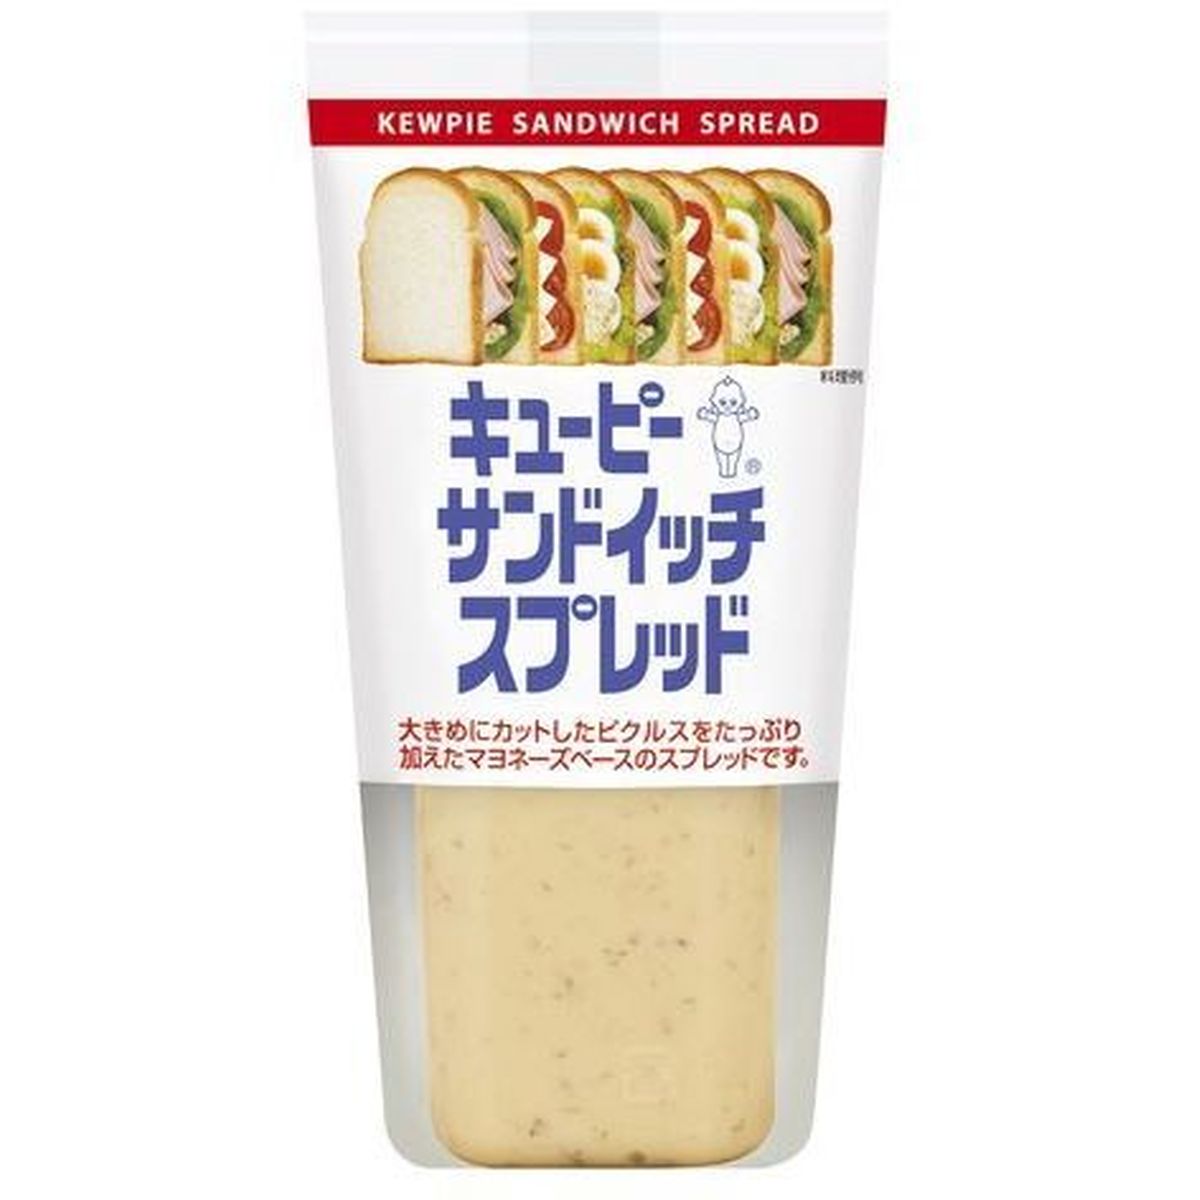 【12個入リ】キューピー サンドイッチ スプレット 145g